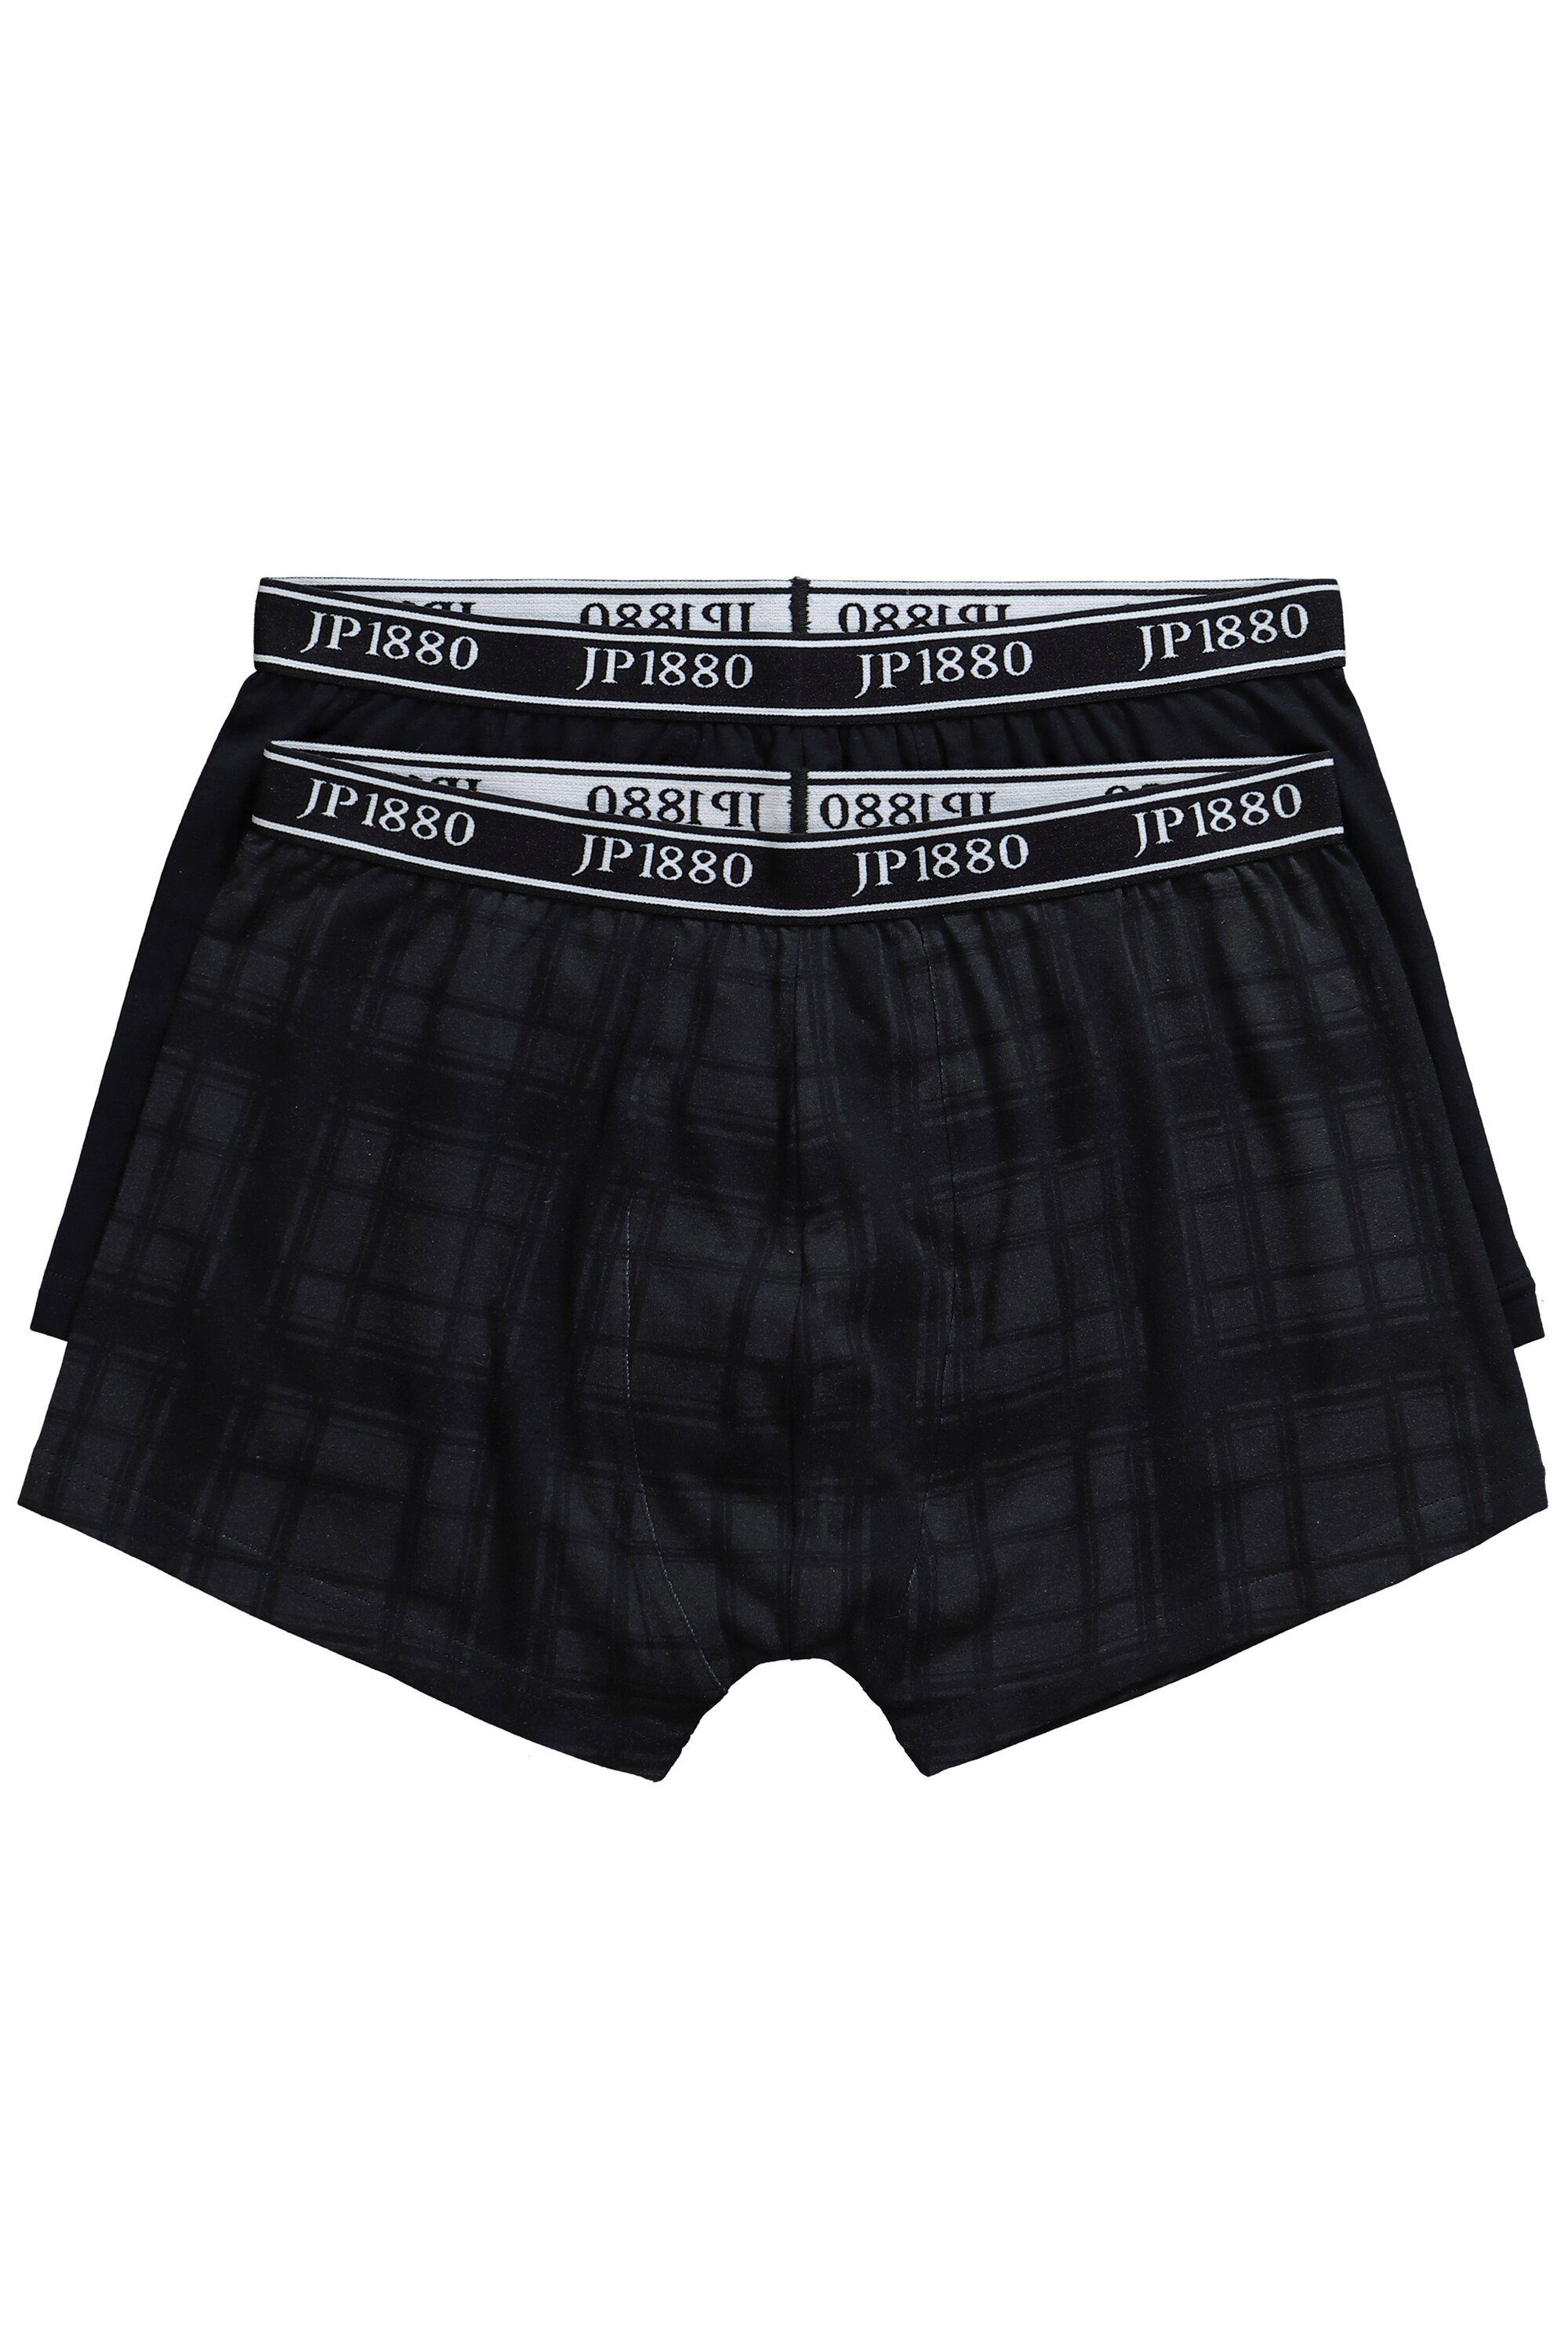 JP1880 Boxershorts Hip-Pants FLEXNAMIC® 2er-Pack Unterhose bis 10 XL